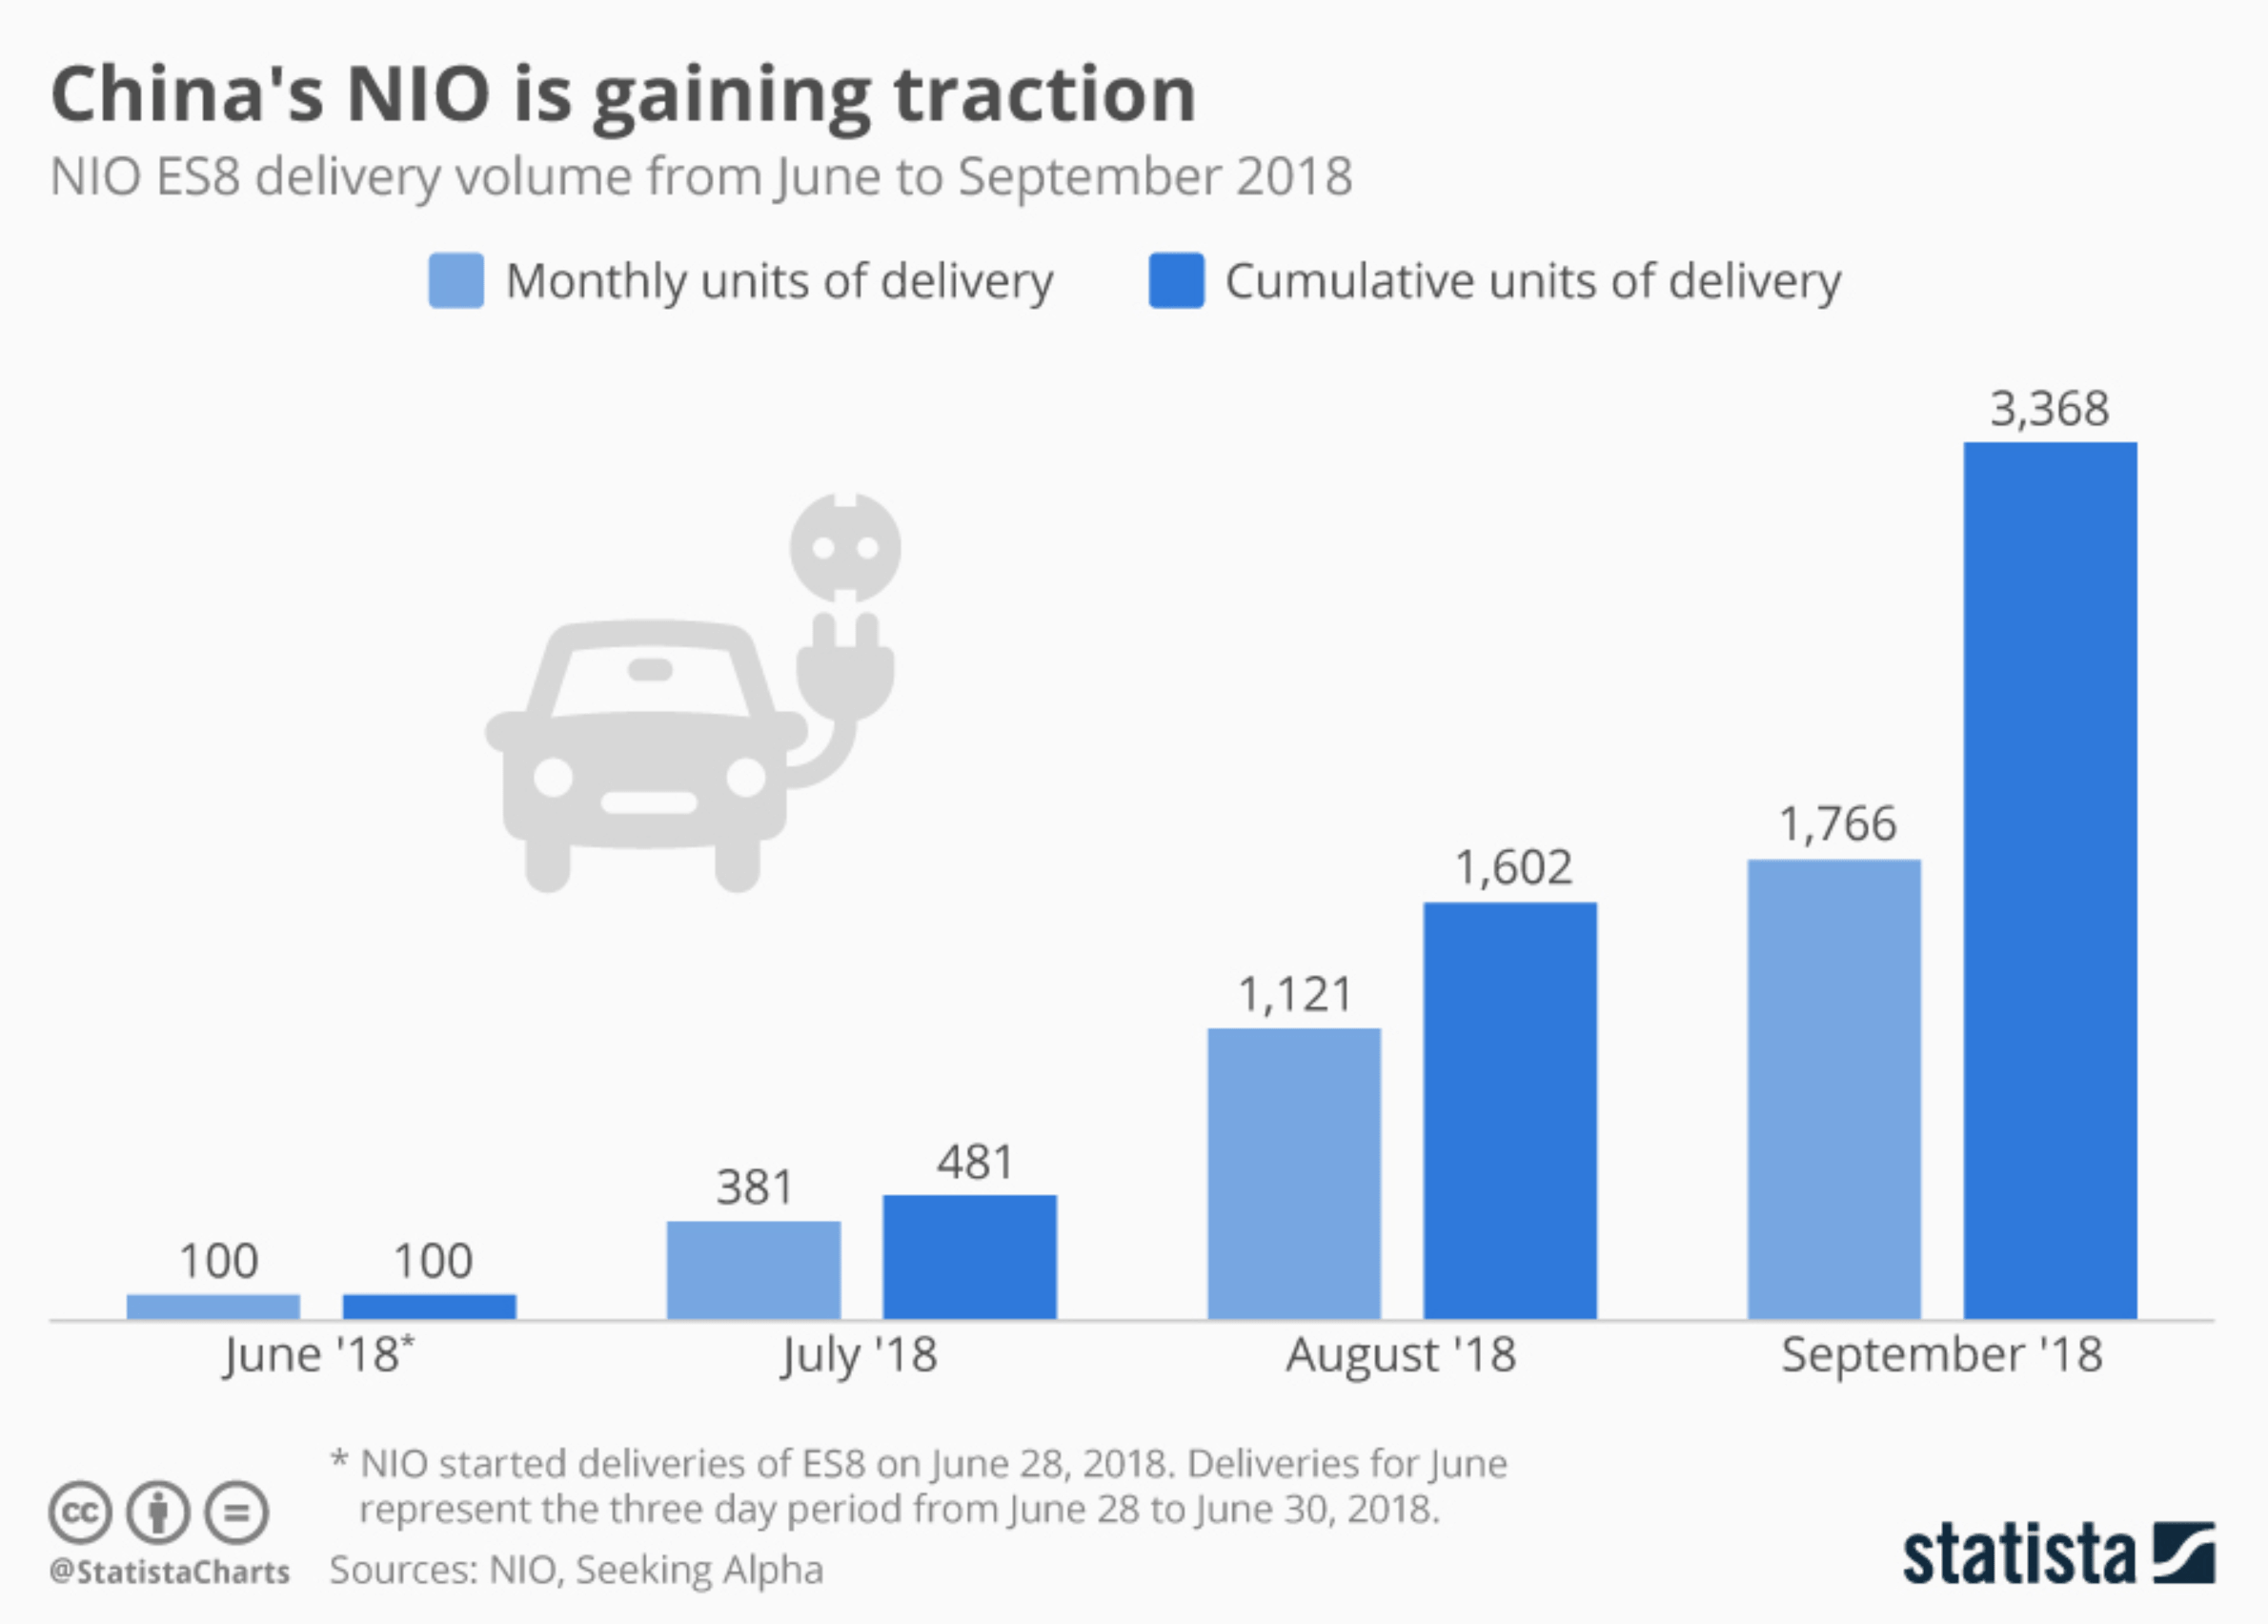 China NIO gaining traction chart